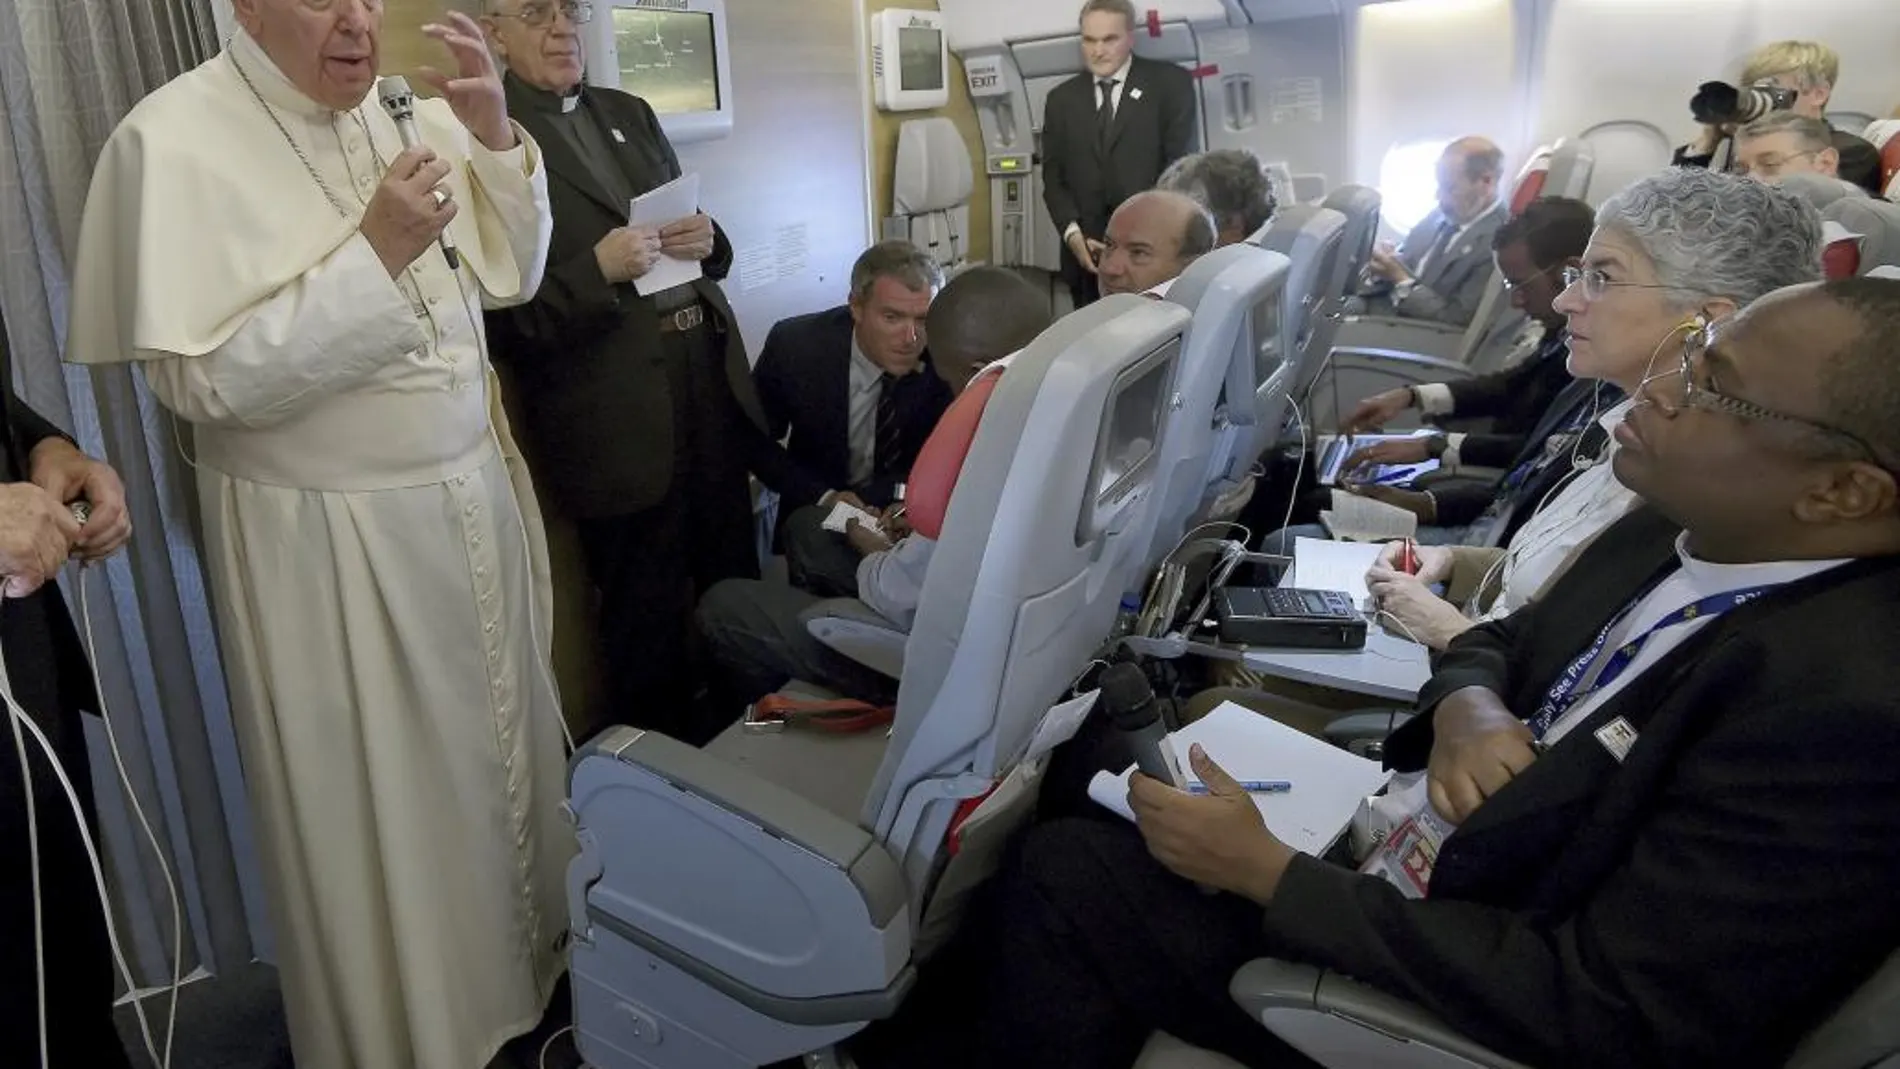 El Papa Francisco a bordo del avión papal camino a Roma